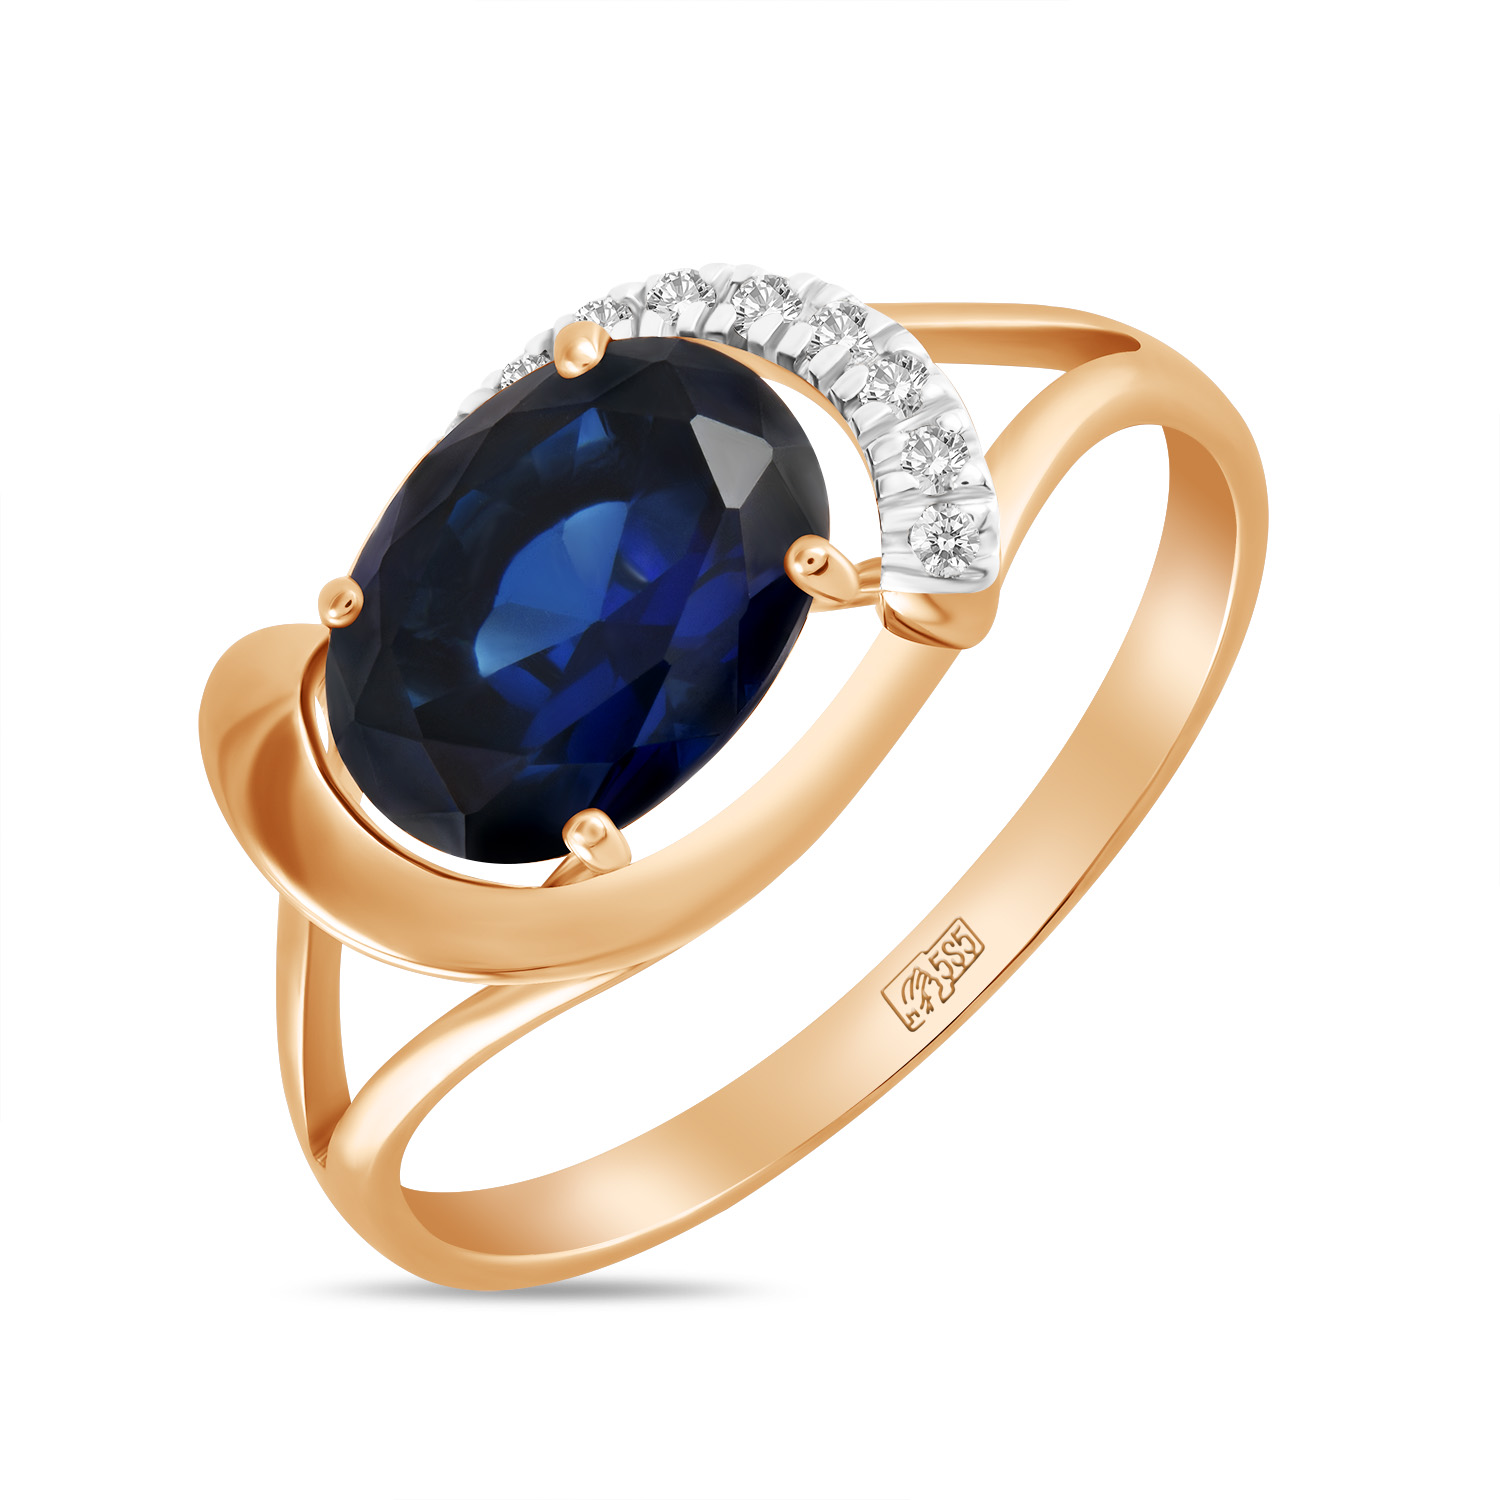 Кольца МЮЗ Кольцо с бриллиантами и выращенным сапфиром кольца мюз золотое кольцо с бриллиантами и выращенным сапфиром